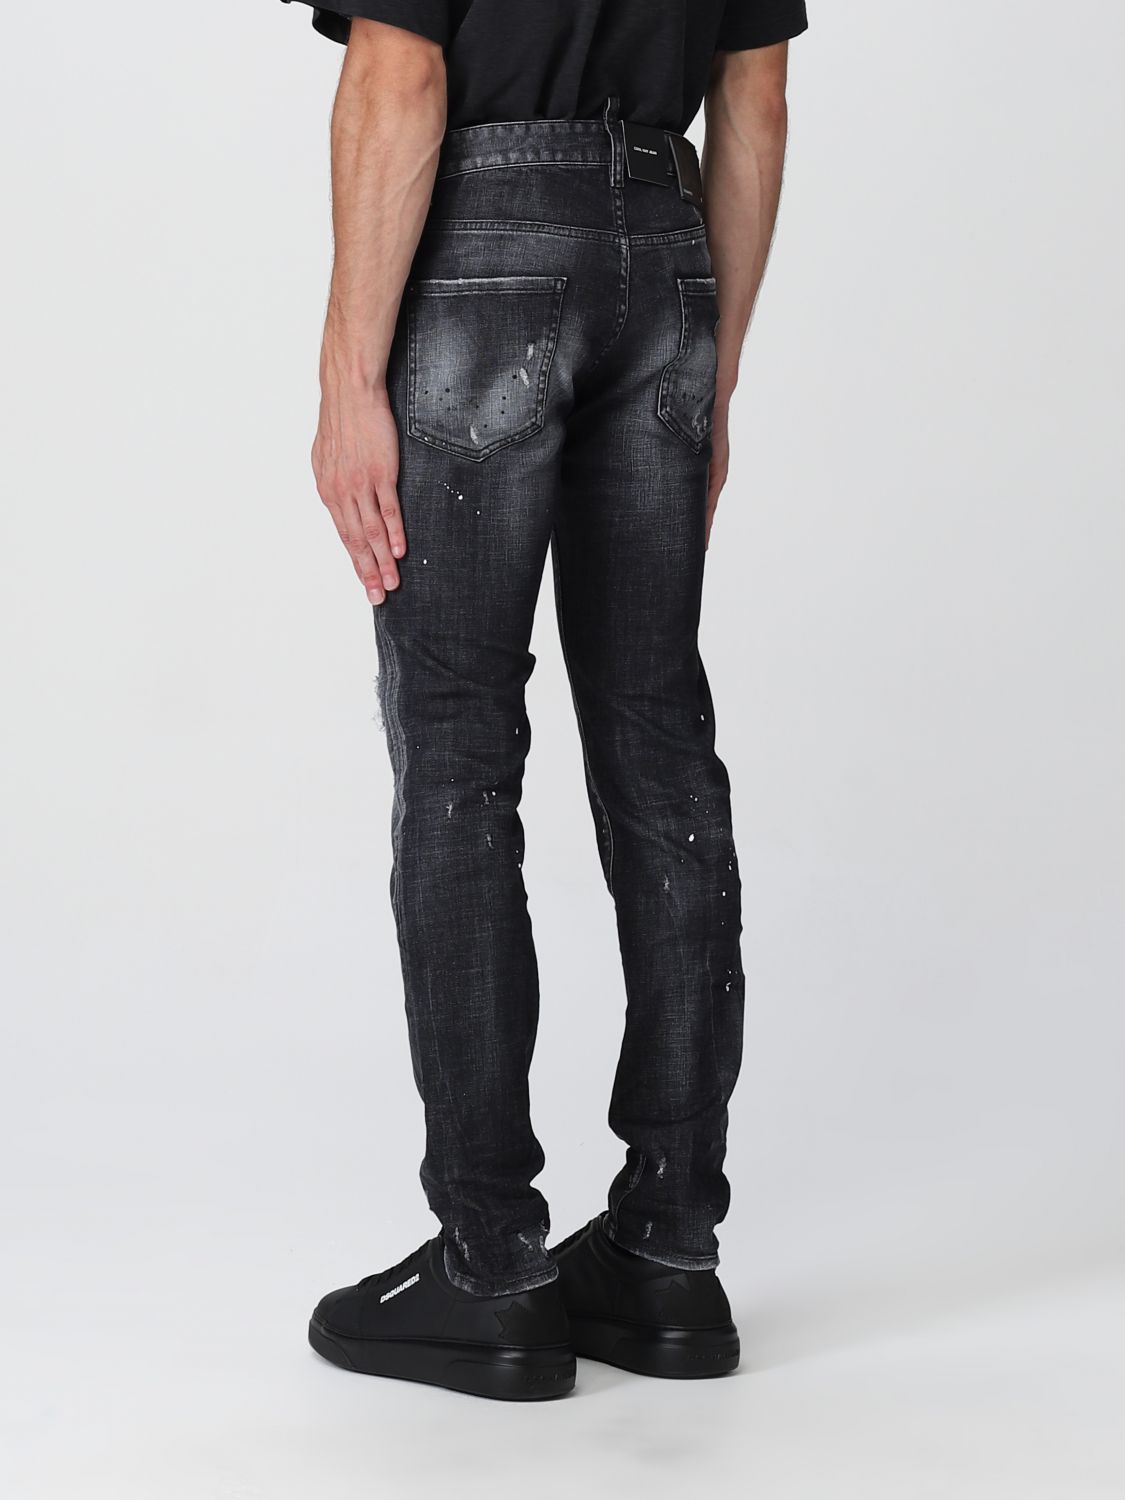 DSQUARED2: Jeans hombre, Negro | Jeans Dsquared2 S74LB1203S30357 en línea en GIGLIO.COM